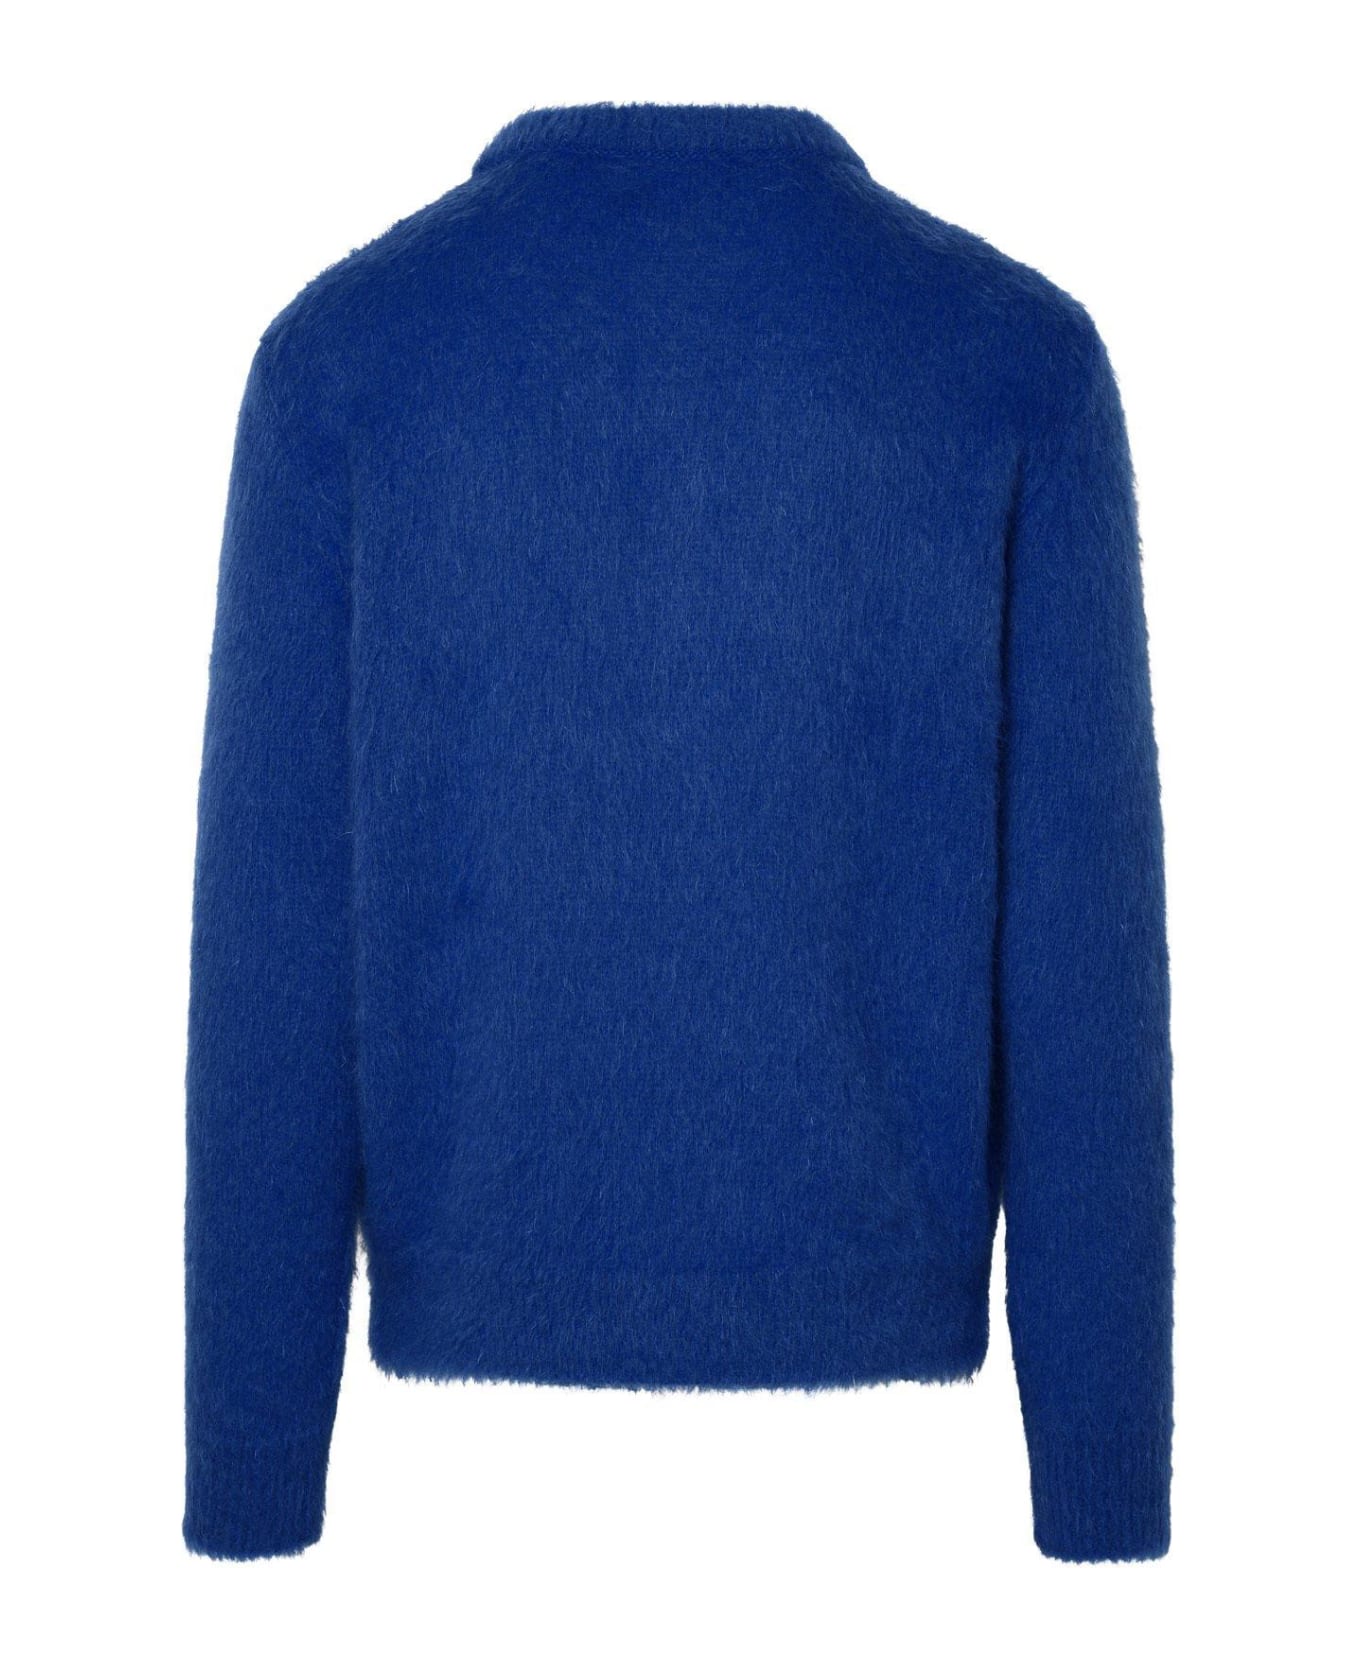 Balmain Brushed Mohair Sweater - Siu Cobalt Blanc